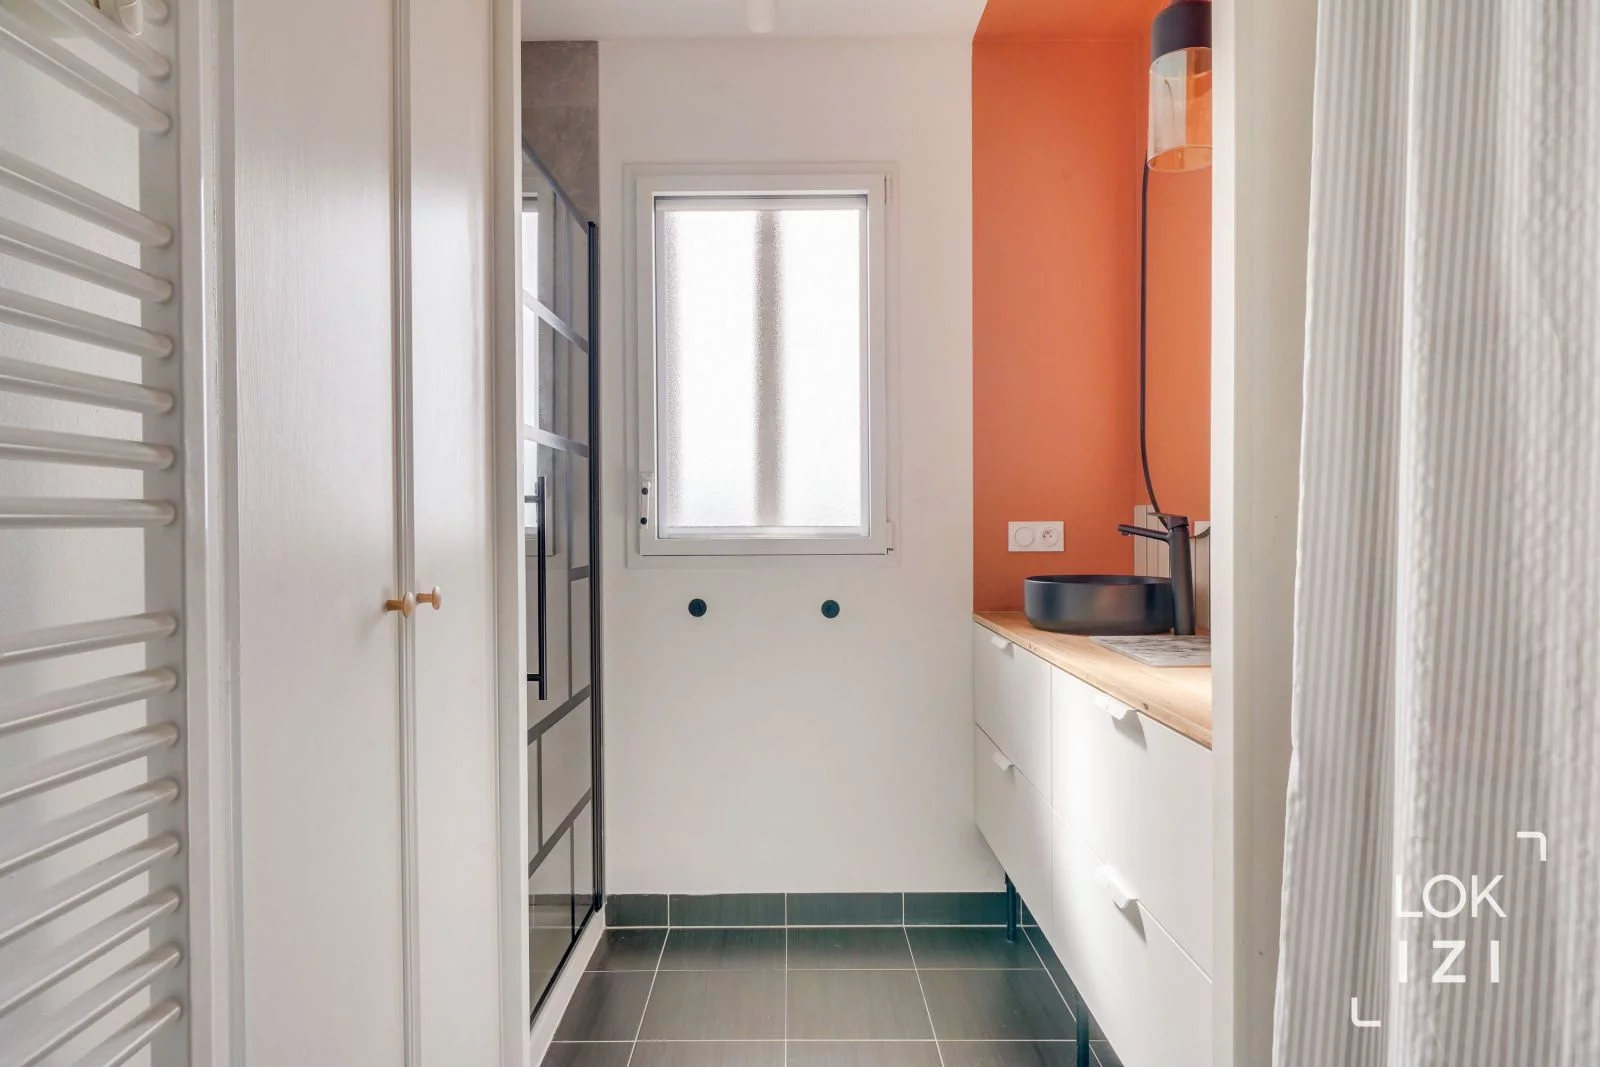 Location appartement meublé 3 pièces 67m² (Bordeaux - Bassins à flot)